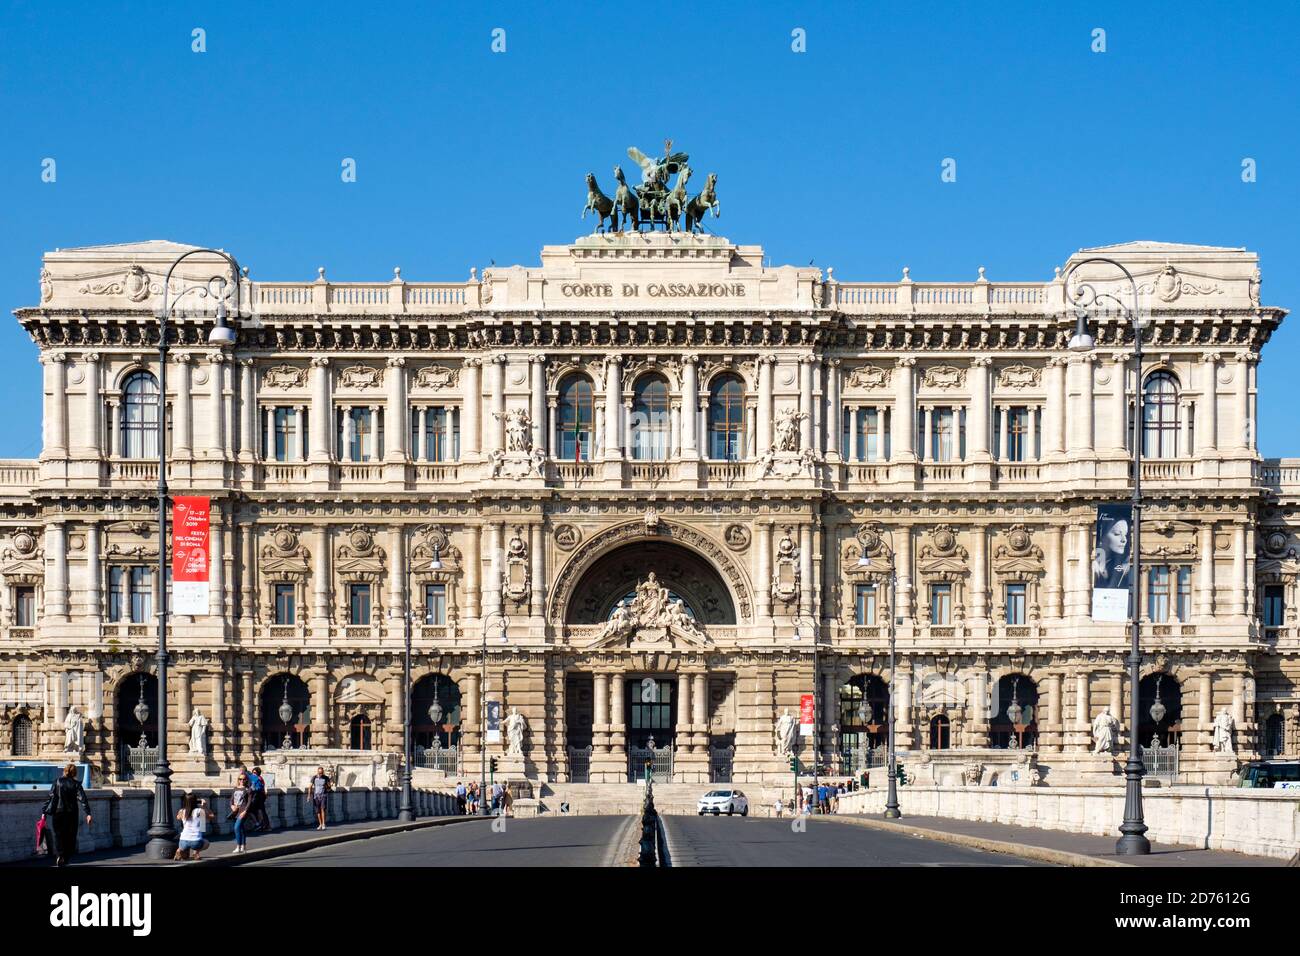 Corte Suprema di Cassazione (Supreme Court of Cassation), Palace of Justice, Rome, Italy Stock Photo